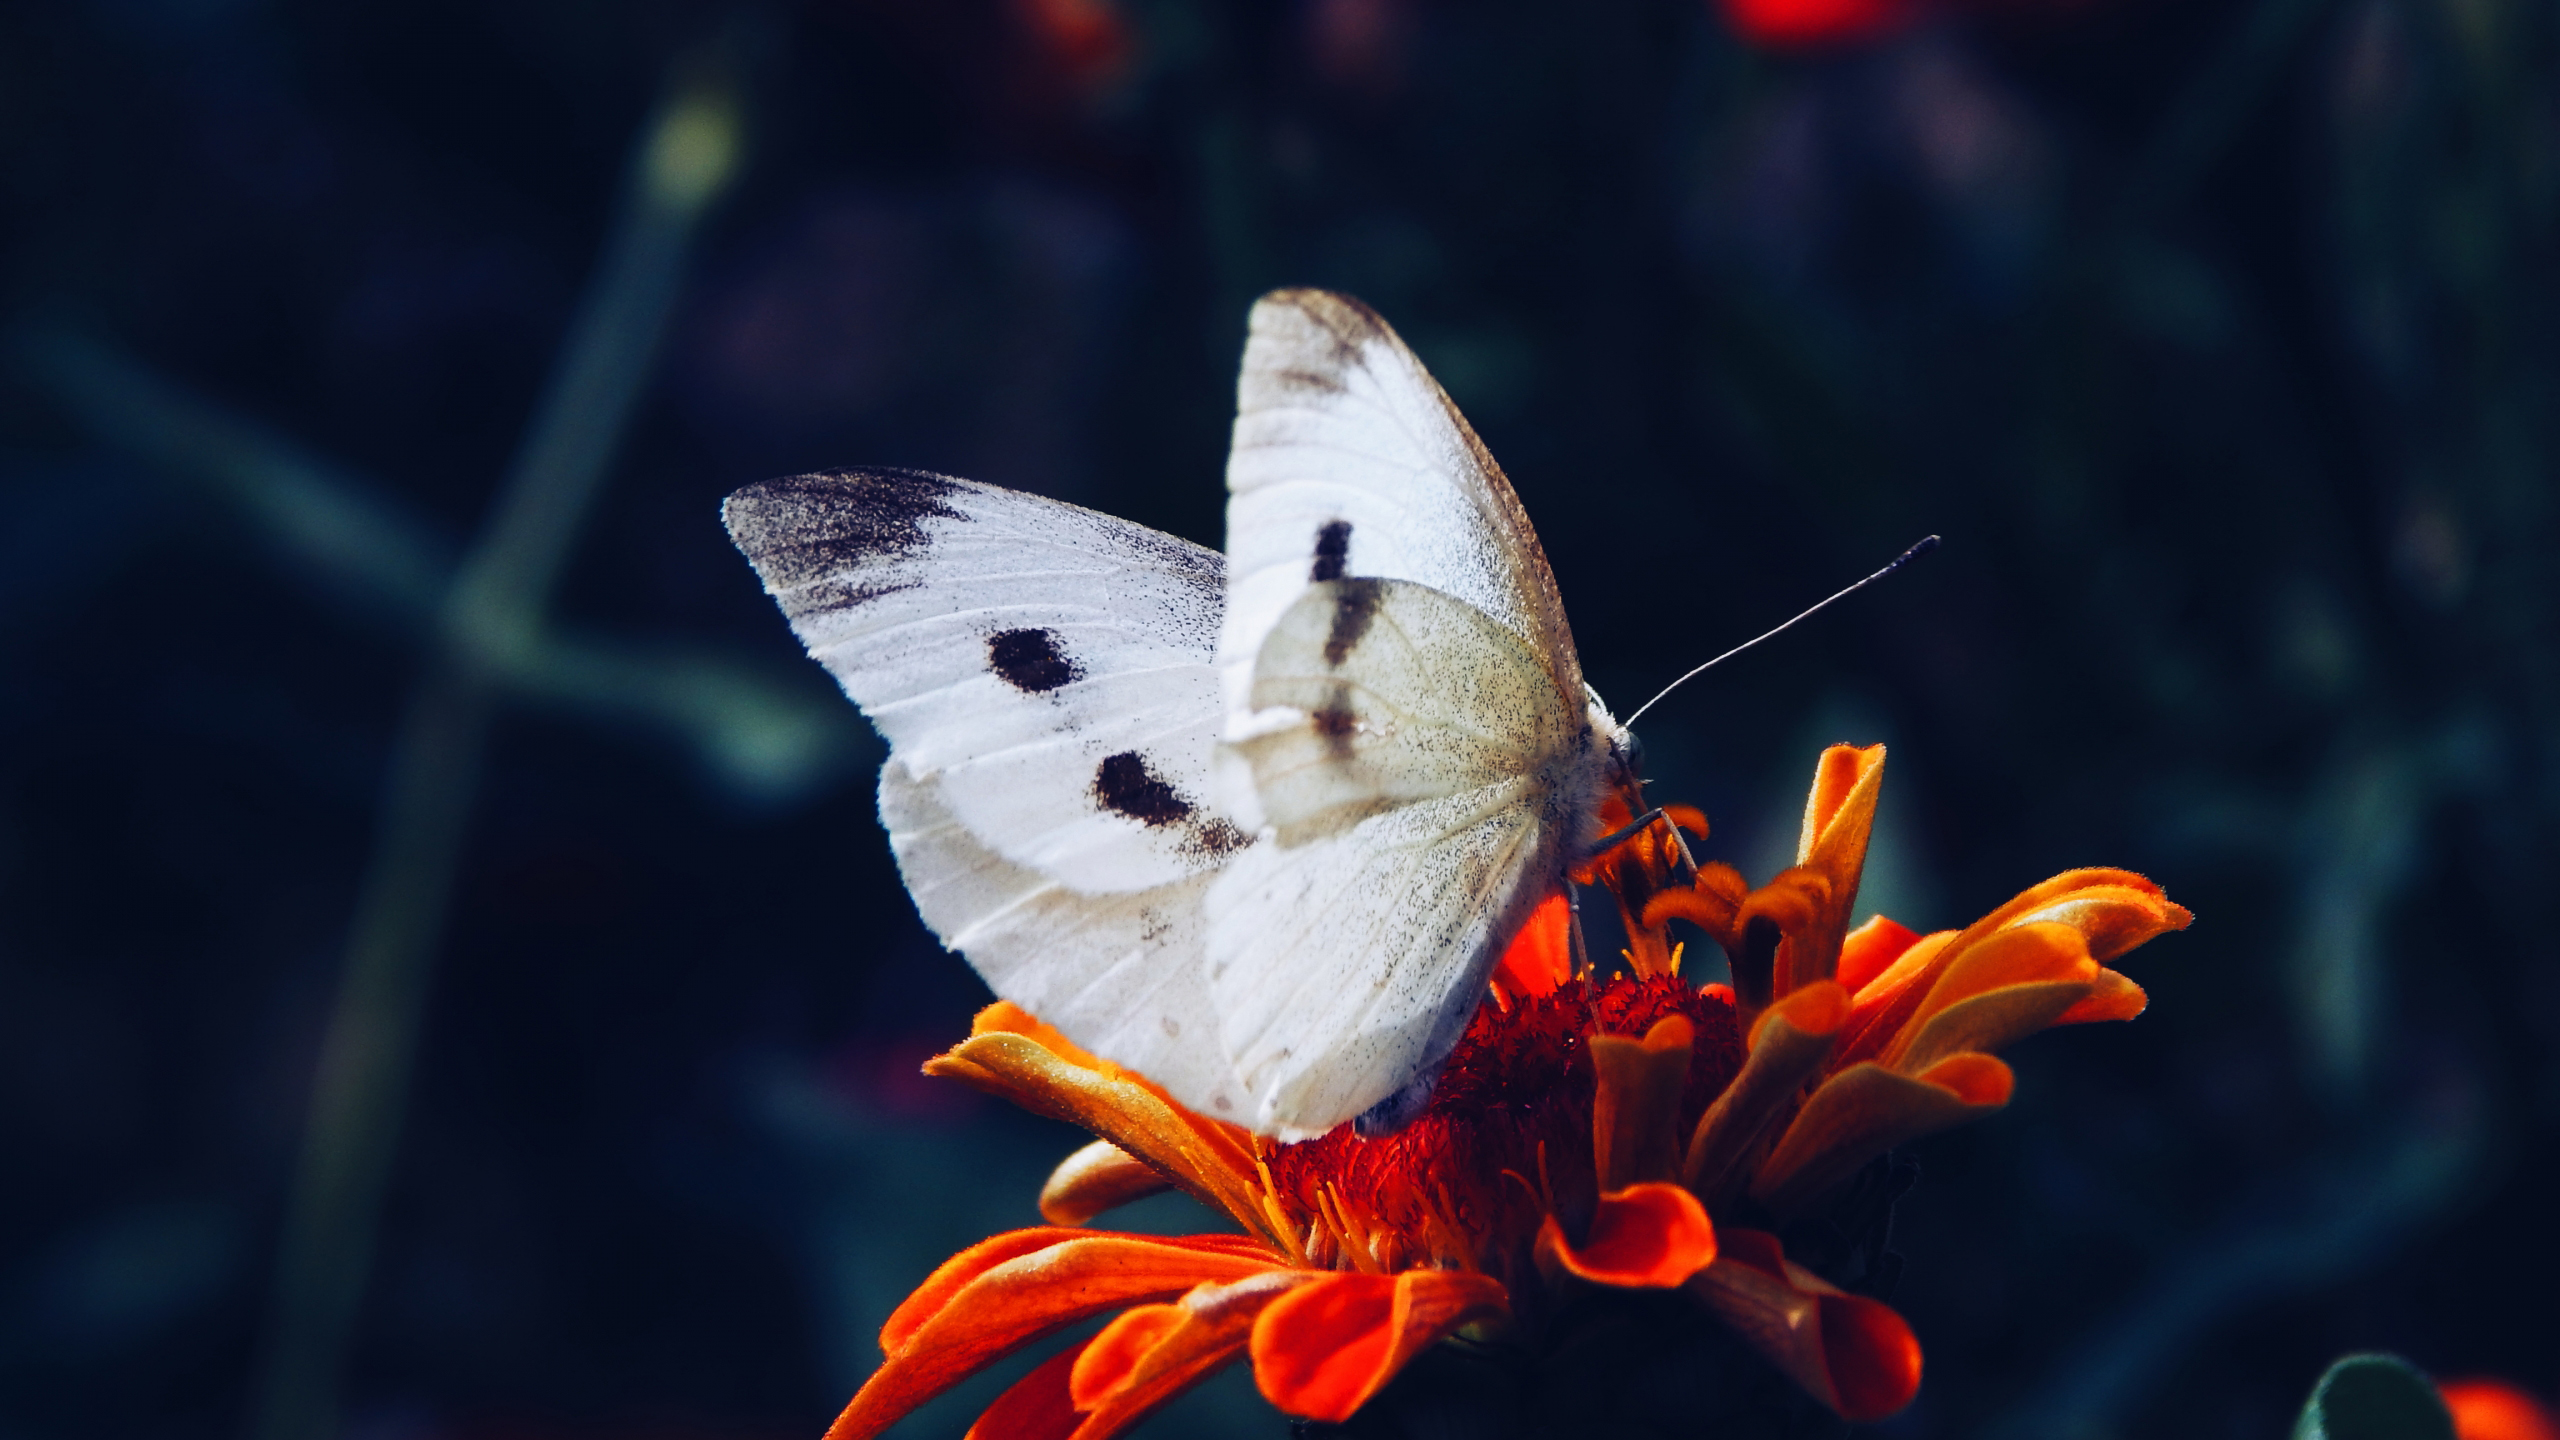 White Black Butterfly On Red Flower In Blur Wallpaper HD Butterfly